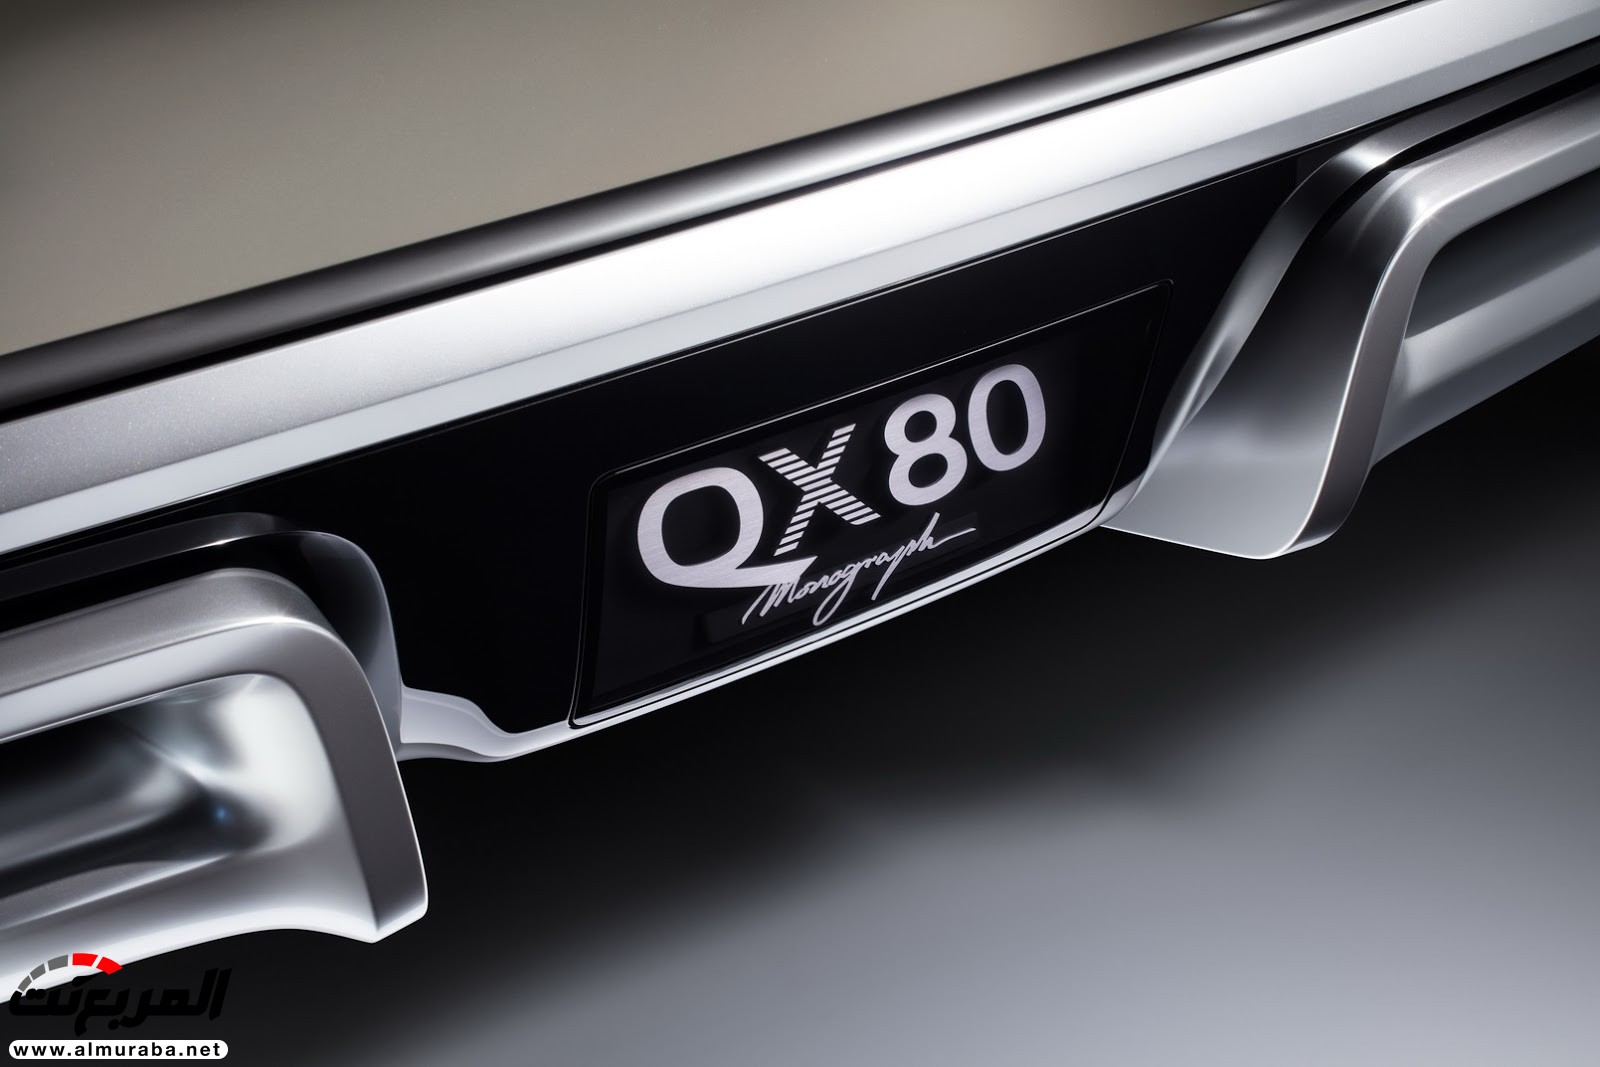 "إنفينيتي" تكشف عن كونسيبت سيارتها الضخمة QX80 مونوجراف بنيويورك 15